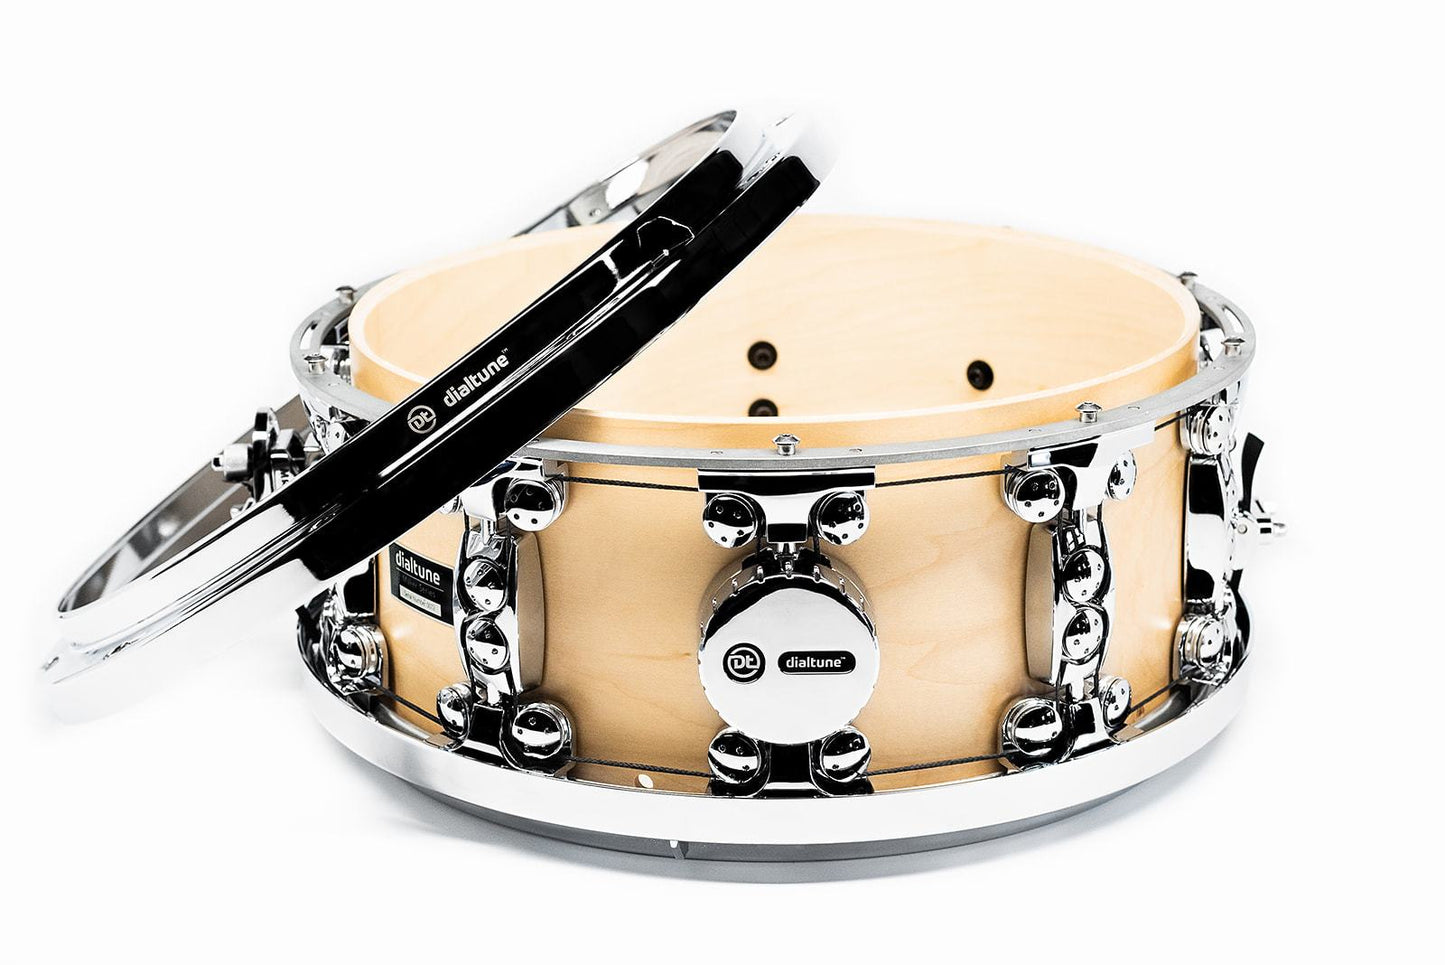 Dialtune 14" x 6.5" Maple Snare Drum